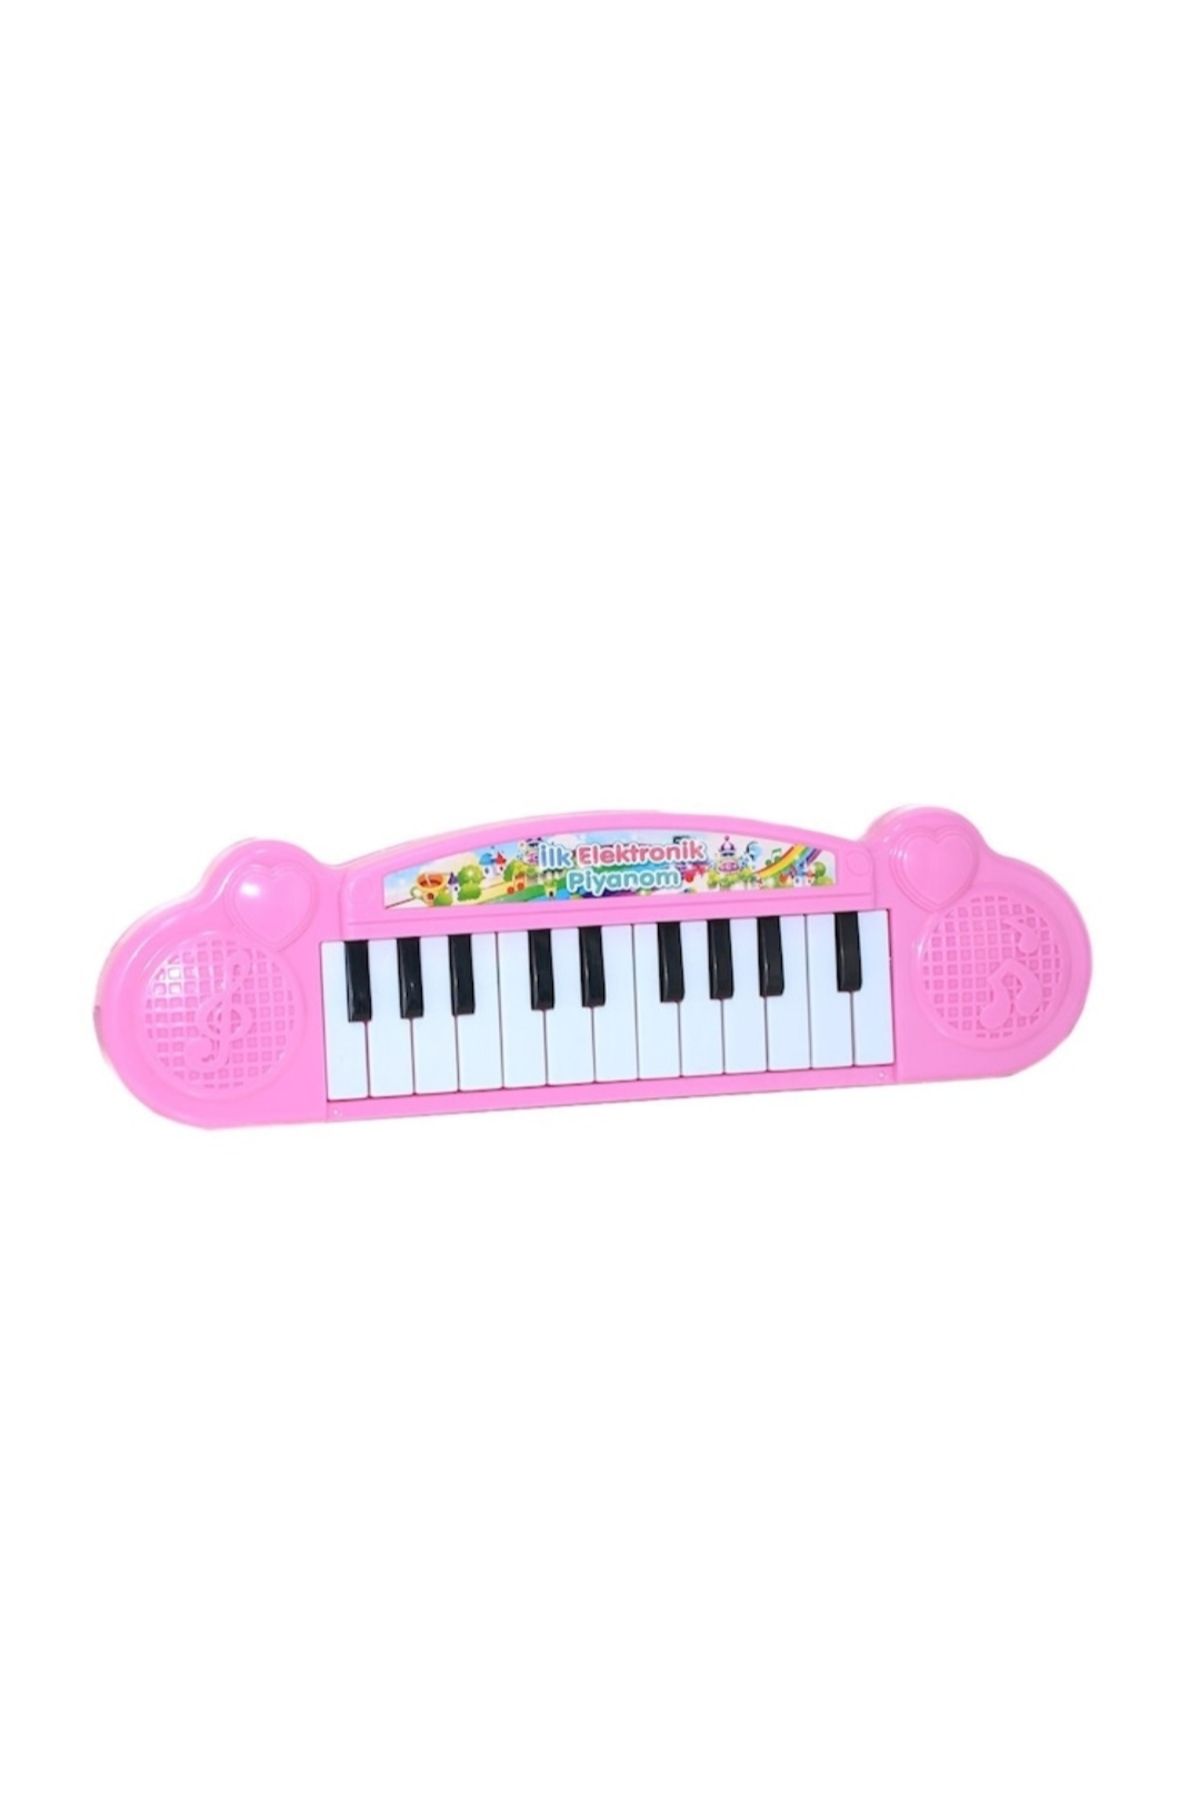 admay Eğlen & Öğren Neşeli Elektronik Piyano Küçük Piyano Pilli Oyuncak